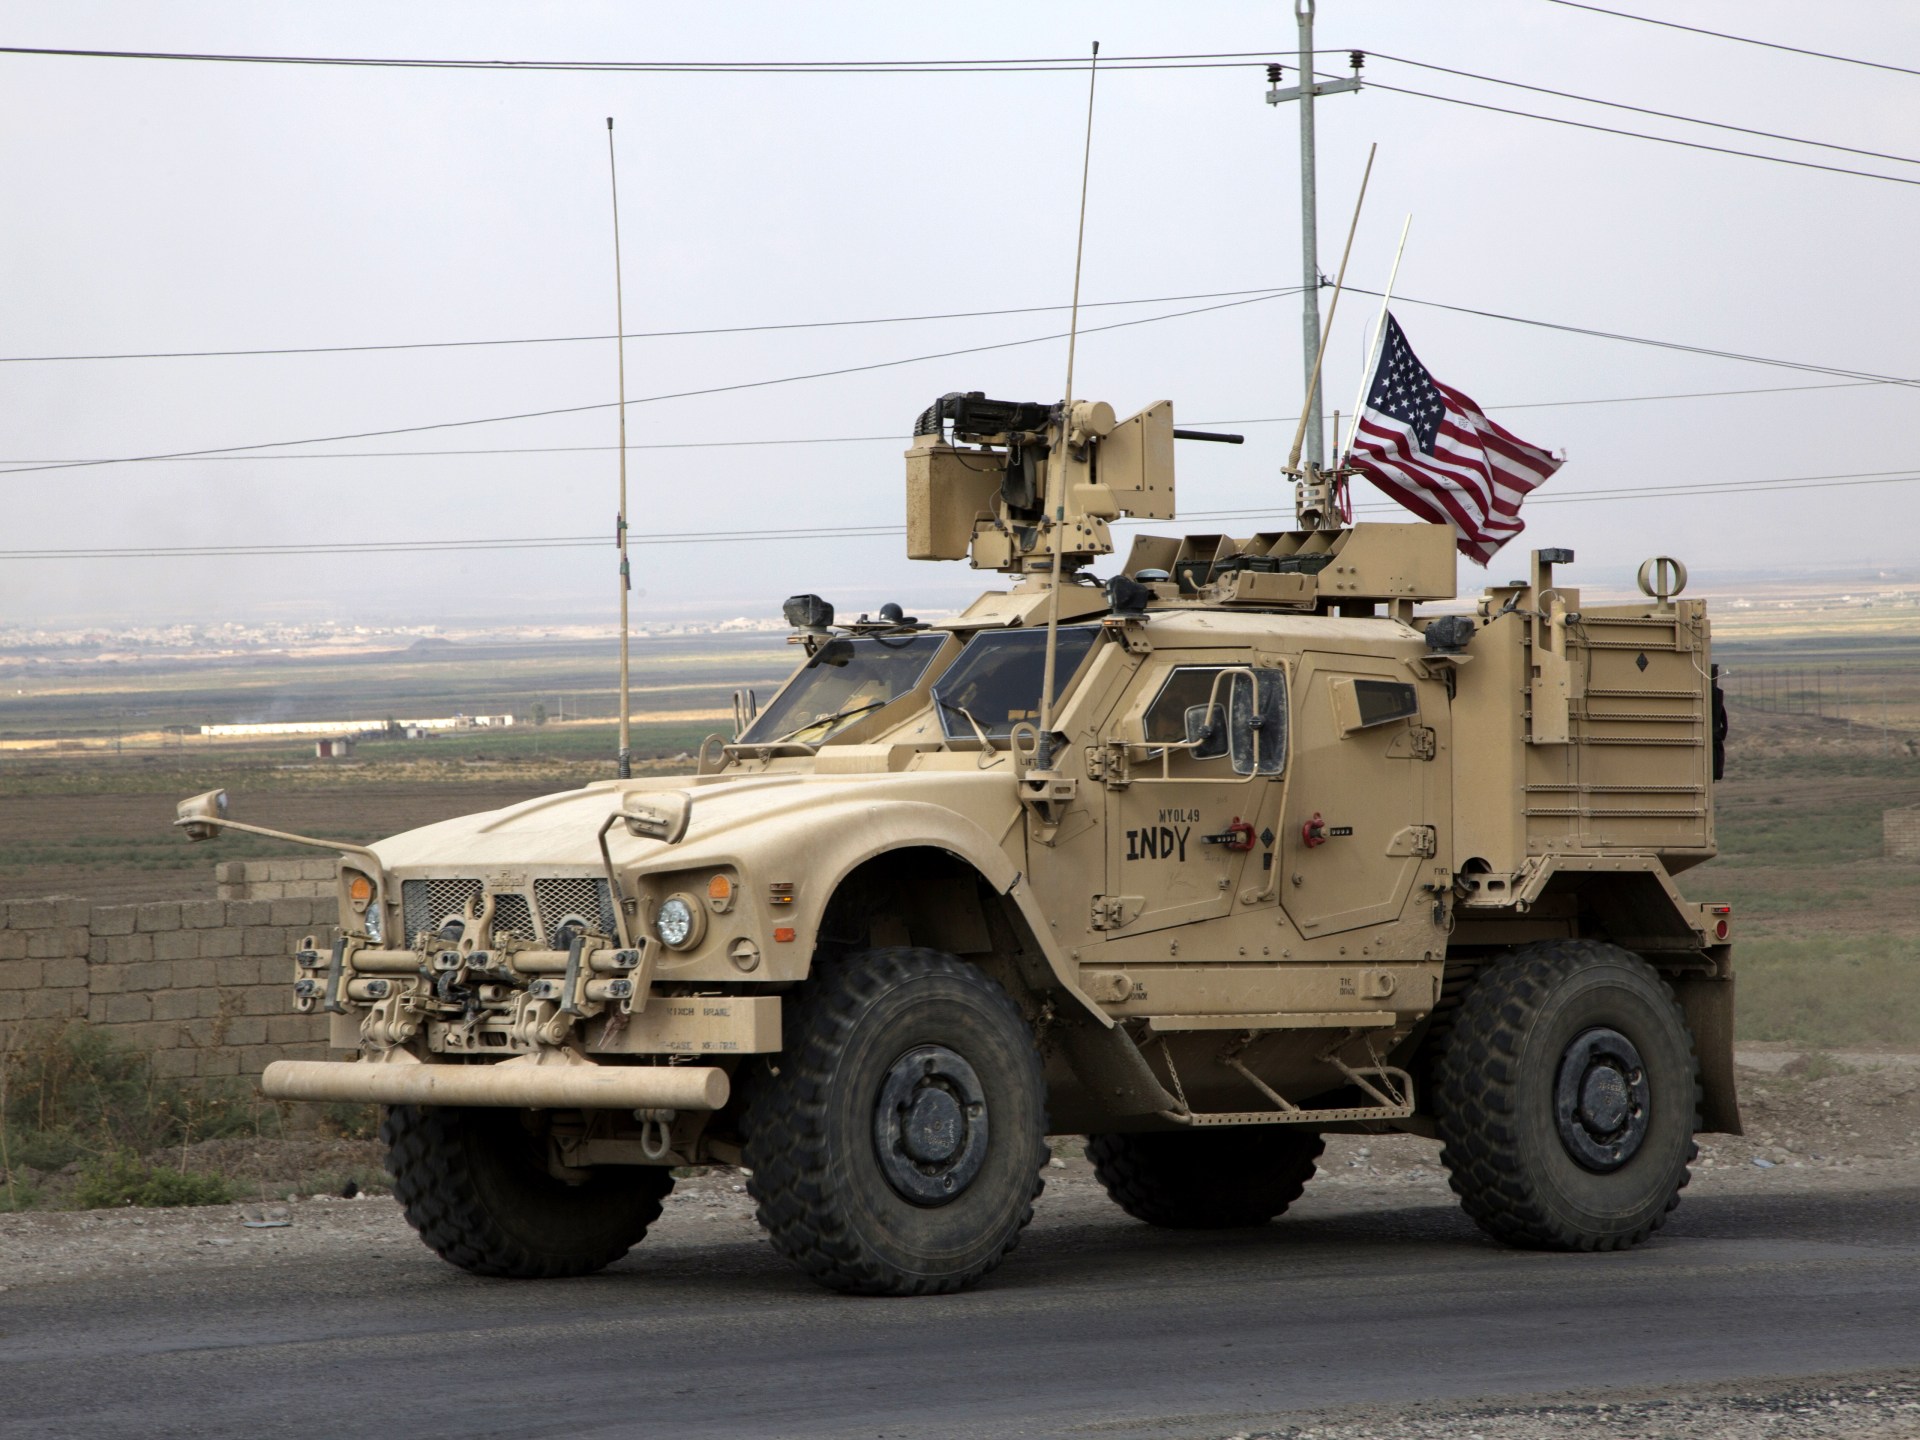 هجمات جديدة ضد القوات الأميركية في العراق وسوريا | أخبار – البوكس نيوز